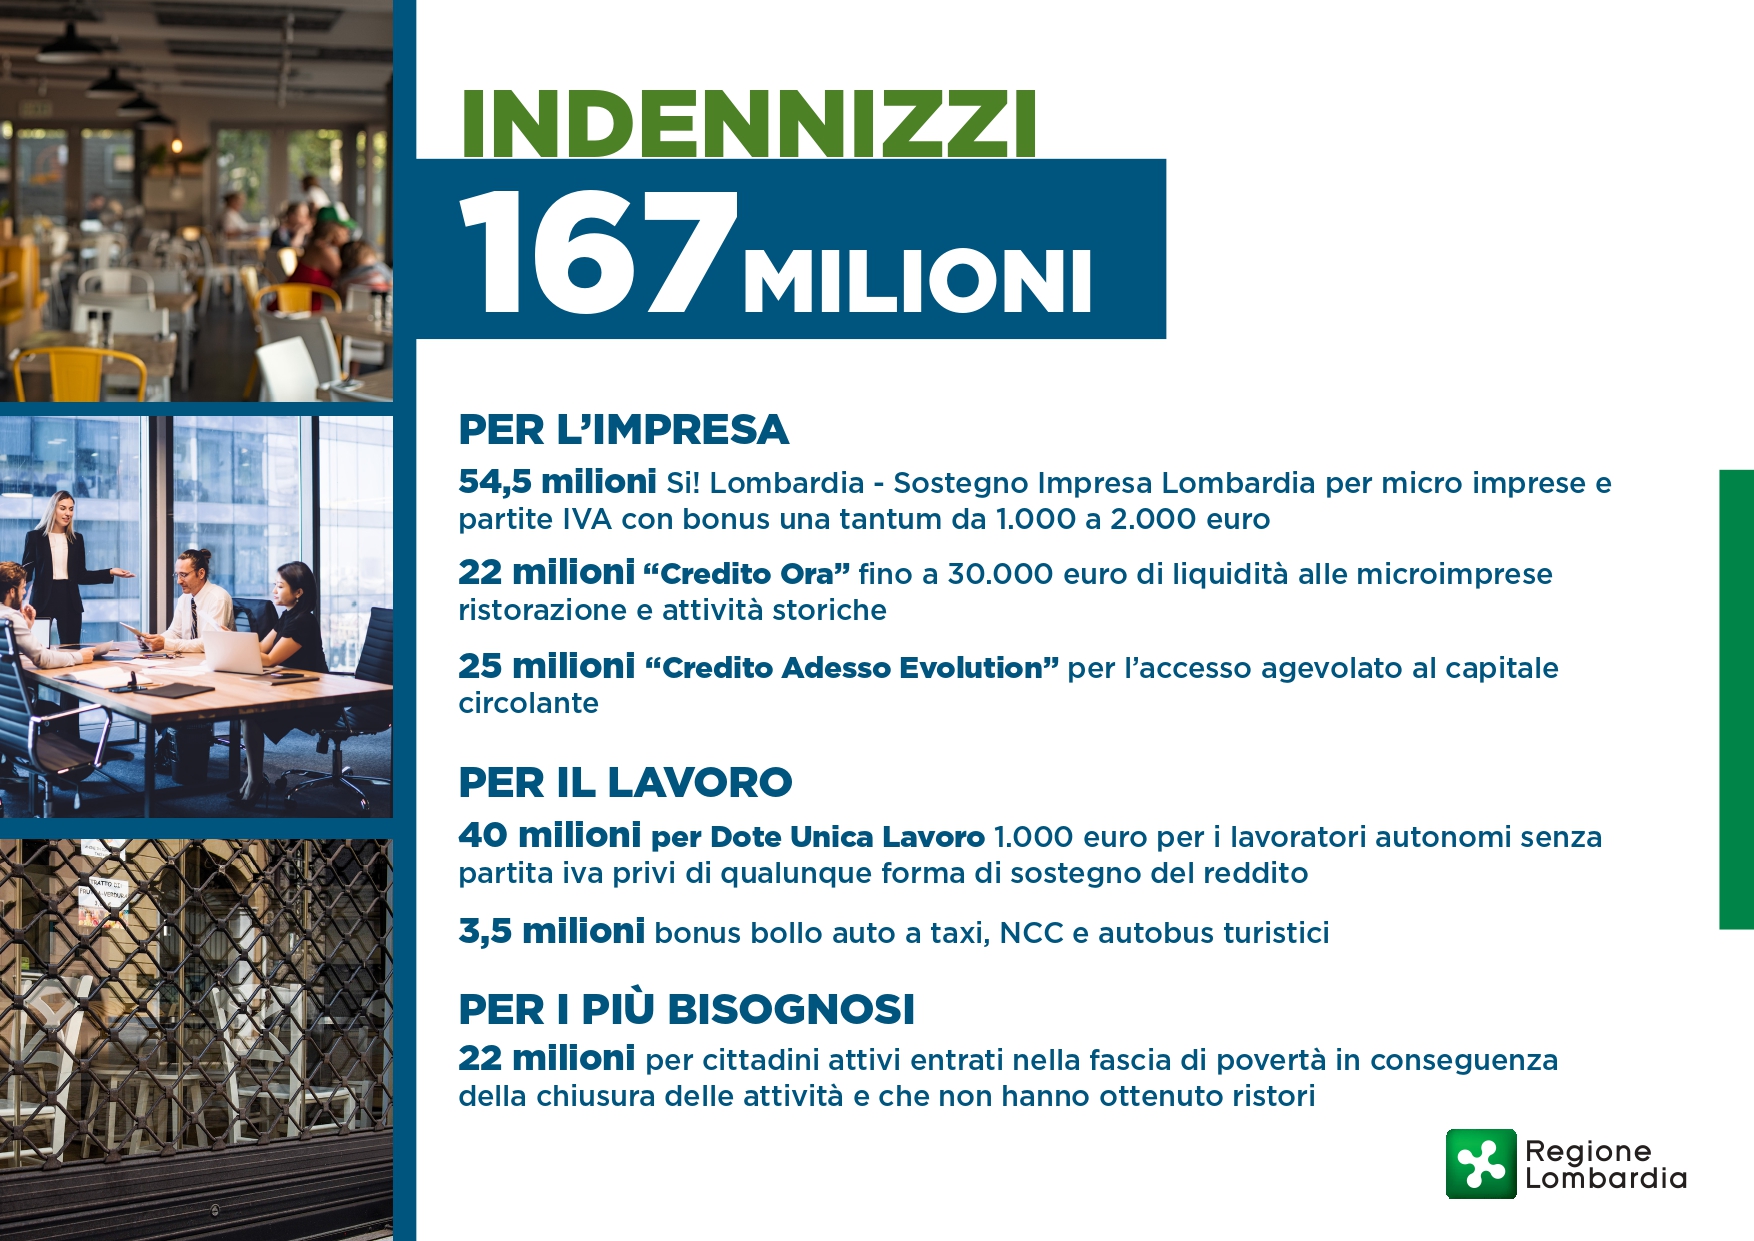 Regione Lombardia. 167 milioni di euro per imprese e lavoratori